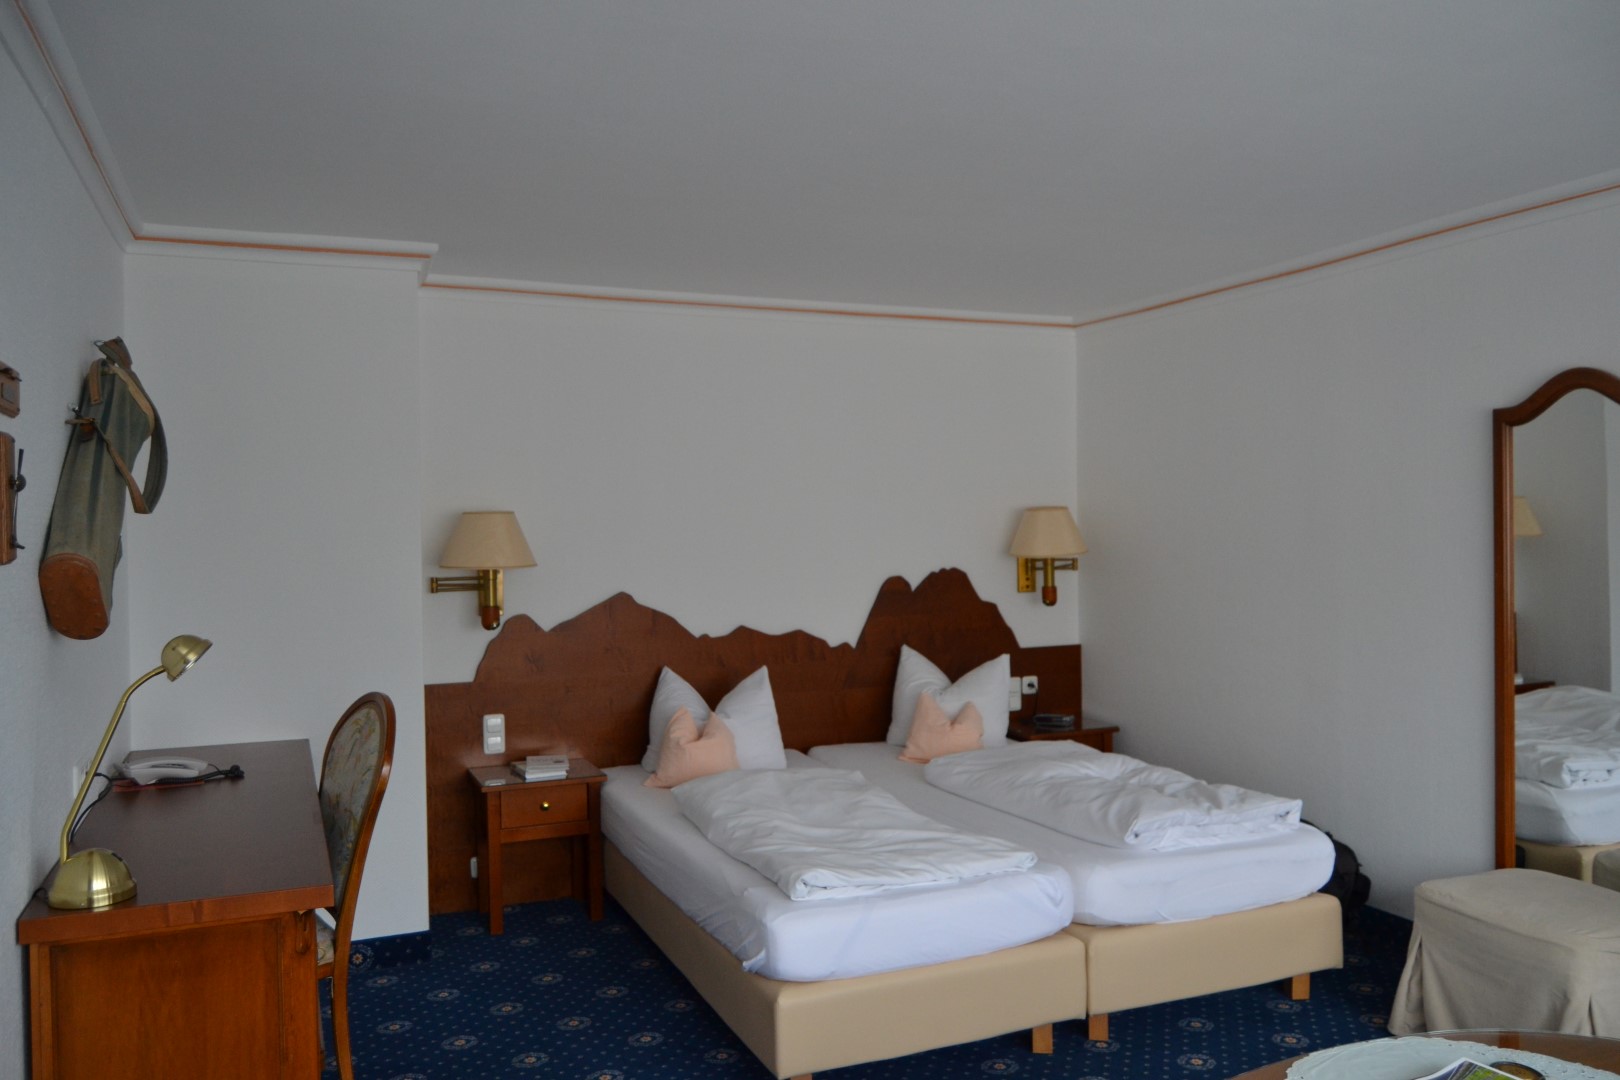 Alternatives to Edelweiss Resort in Garmisch: Rheinischer Hof